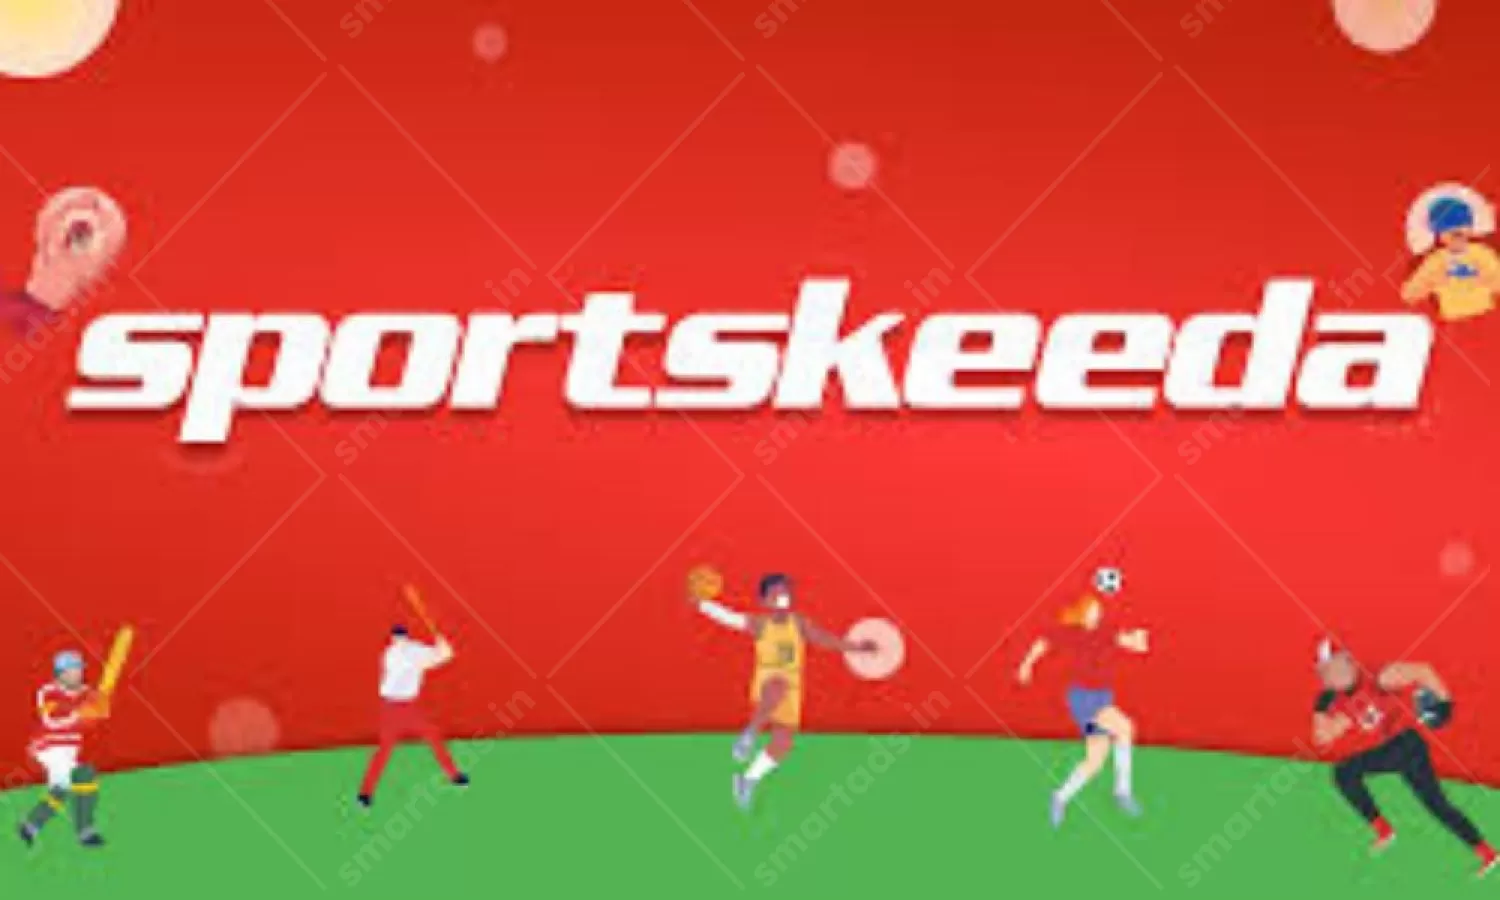 Digital Media Sportskeeda Advertising in India